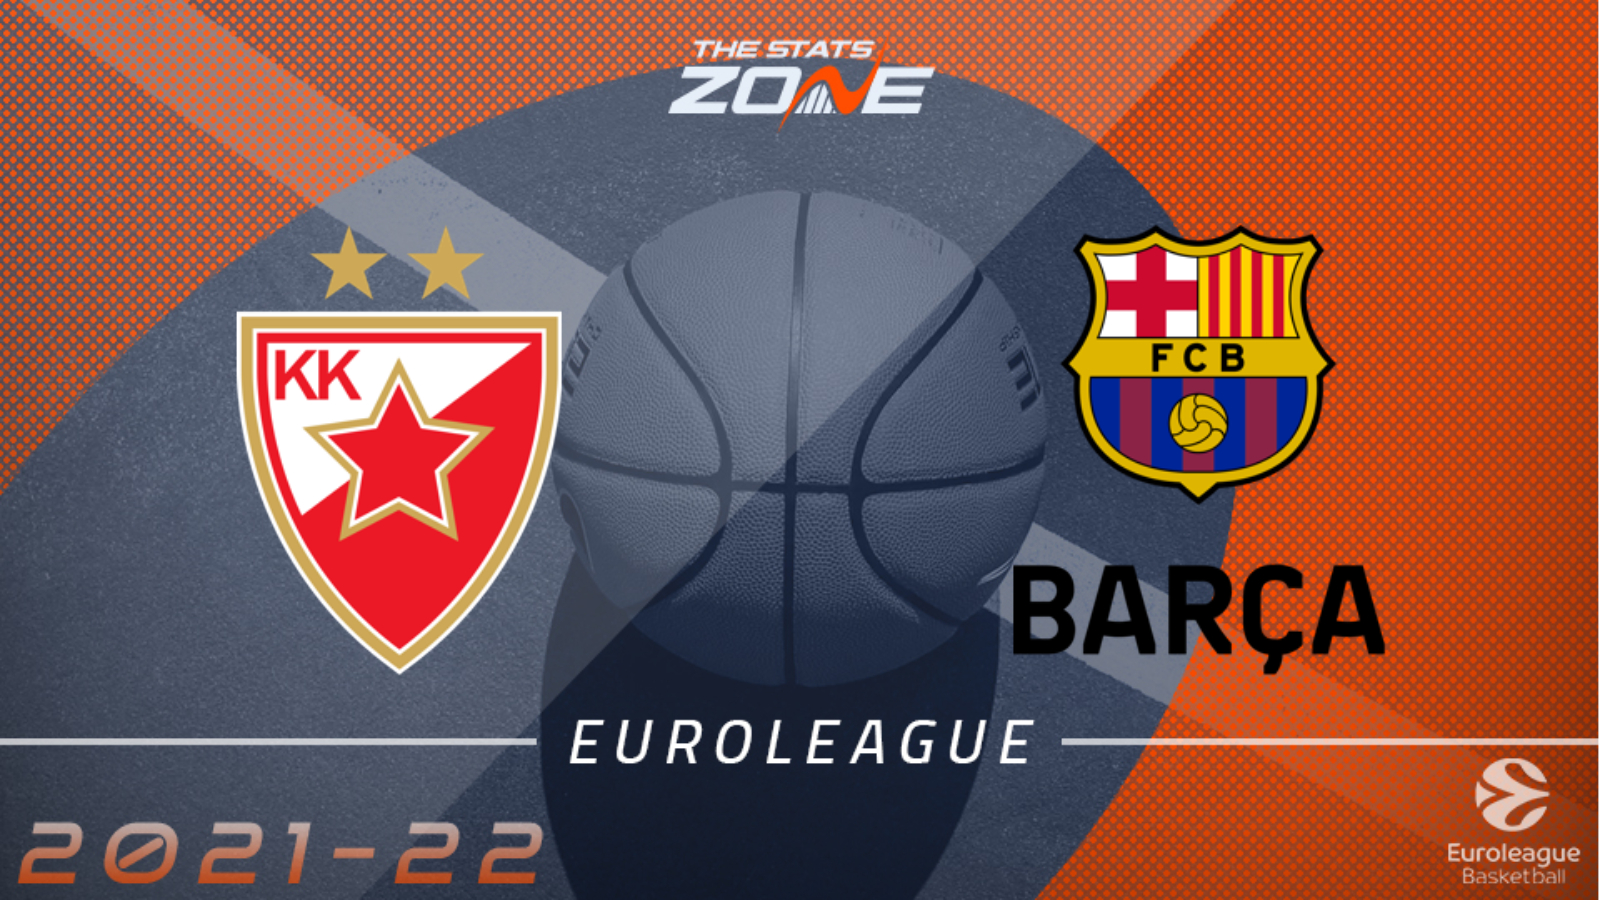 Crvena zvezda mts Belgrade vs FC Barcelona Preview and Prediction